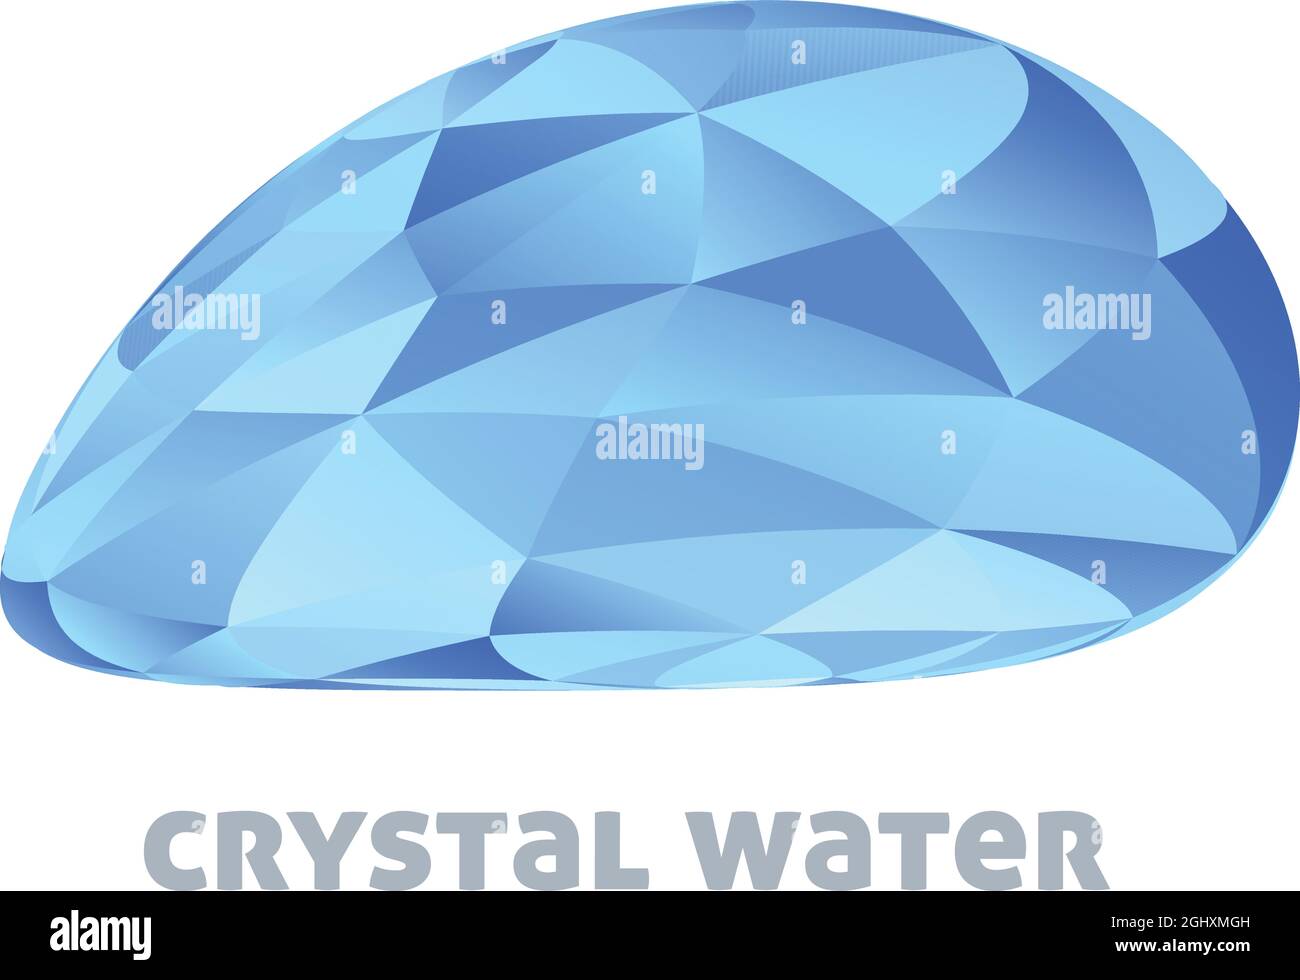 Acqua cristallina. Modello di logo con gocce d'acqua blu testurizzata da triangoli. Logotipo grafico vettoriale Illustrazione Vettoriale